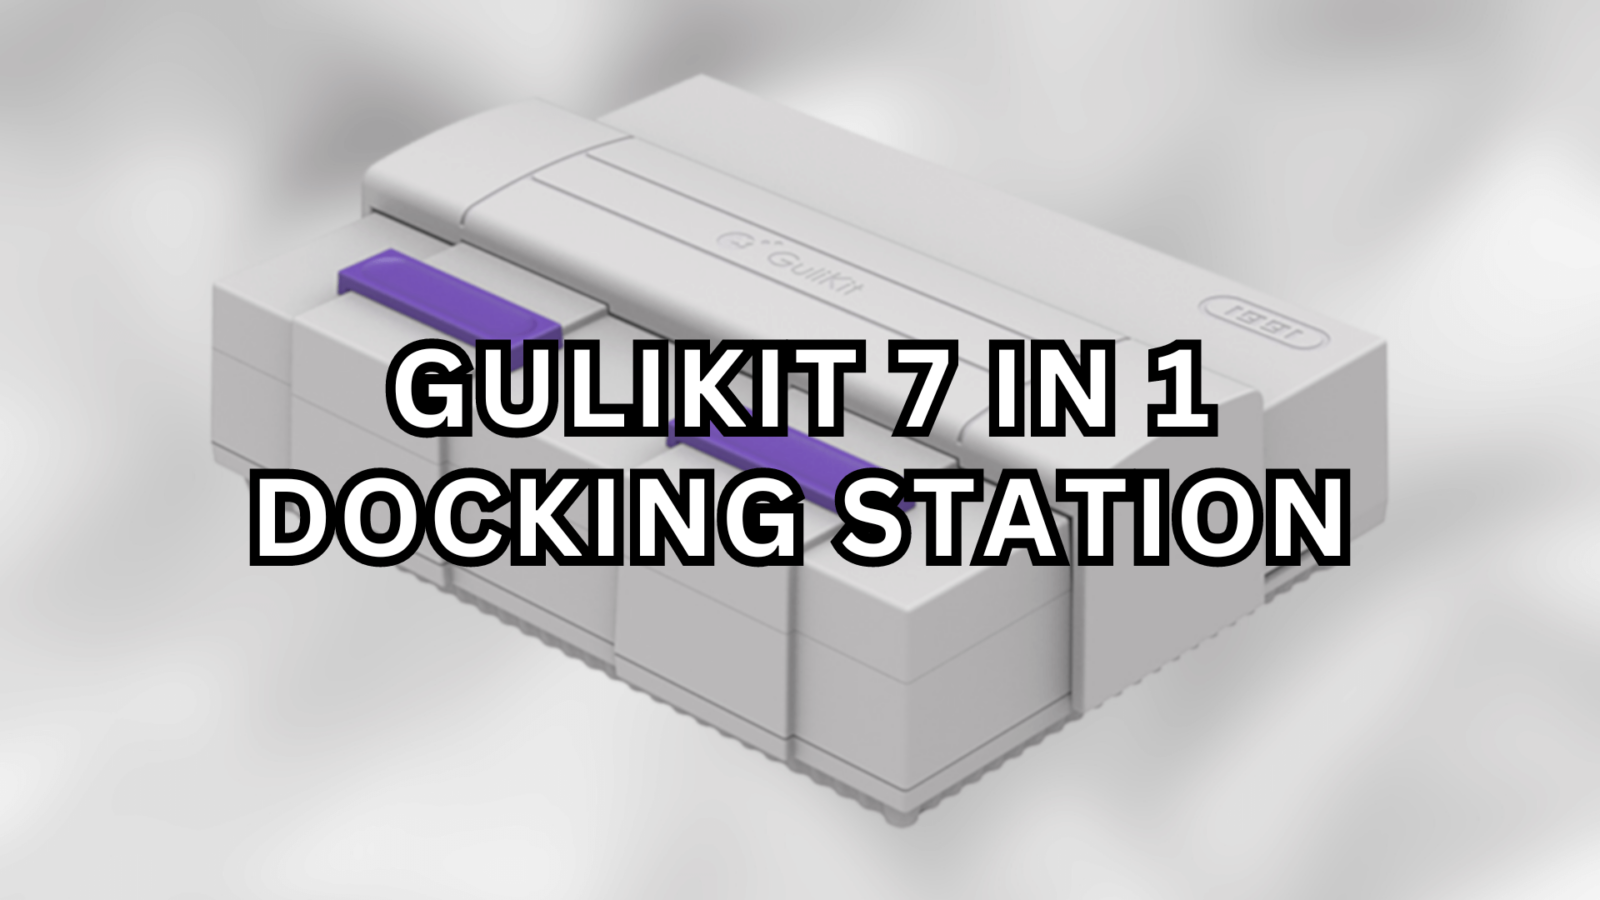 GuliKit 7 in 1 Docking Station